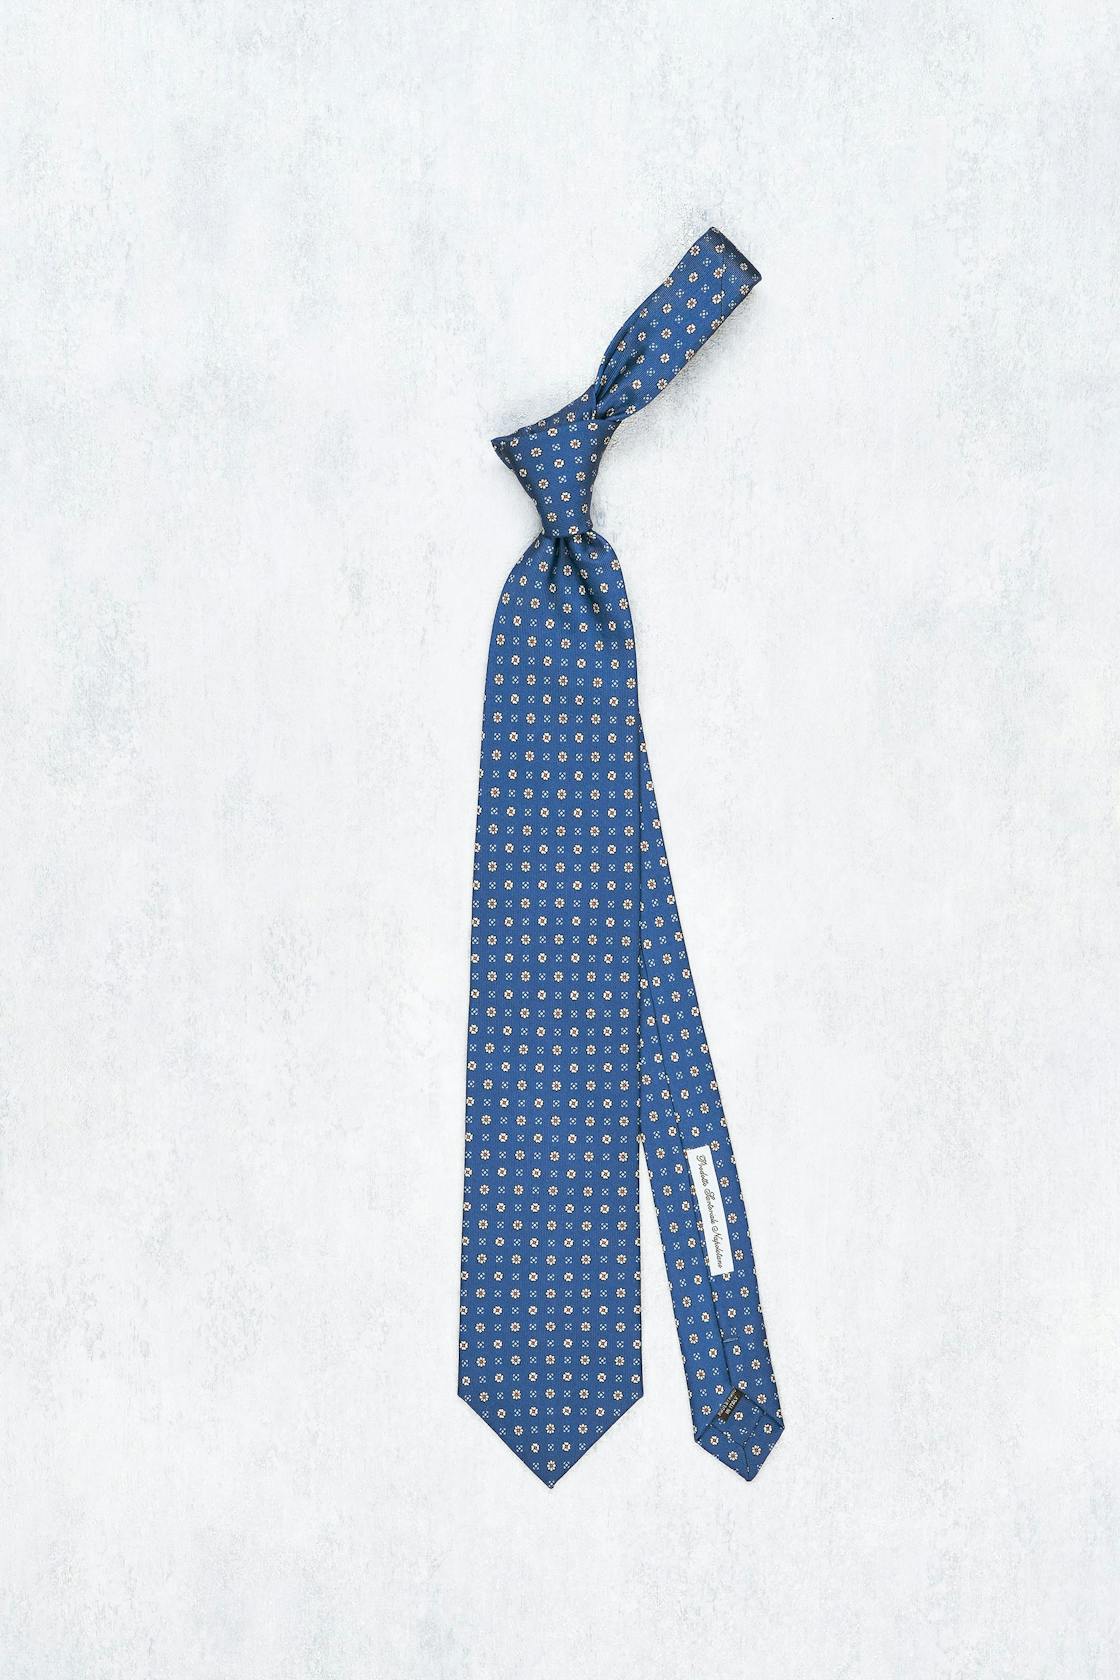 E. Marinella Blue with White/Orange 3-Fold Silk Tie